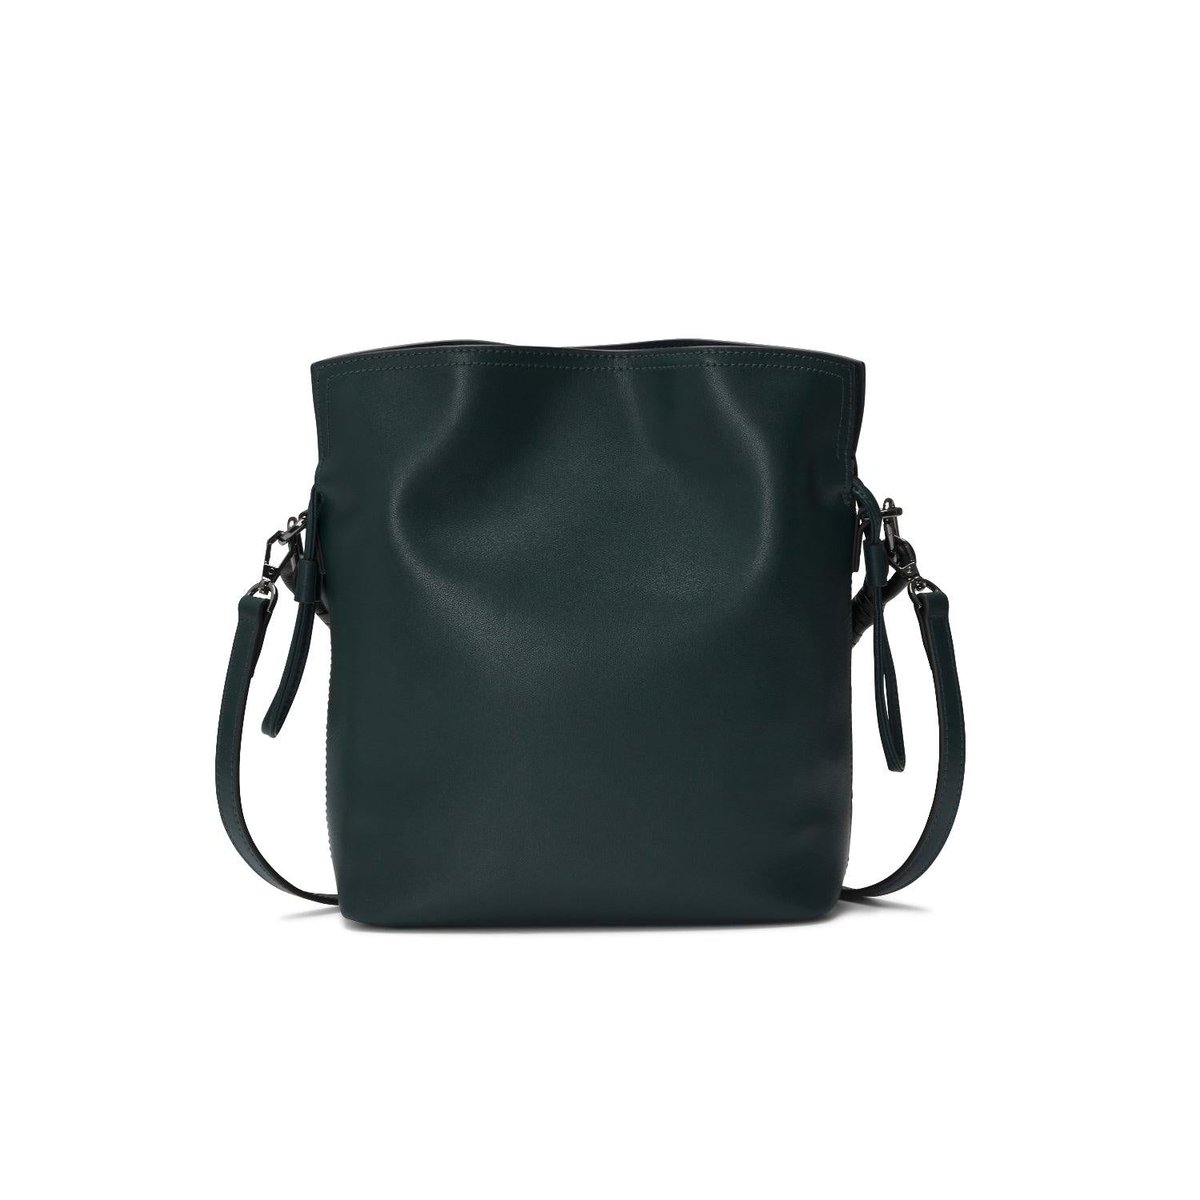 orYANY Madeleine Leather Crossbody Bucket Bag on SALE